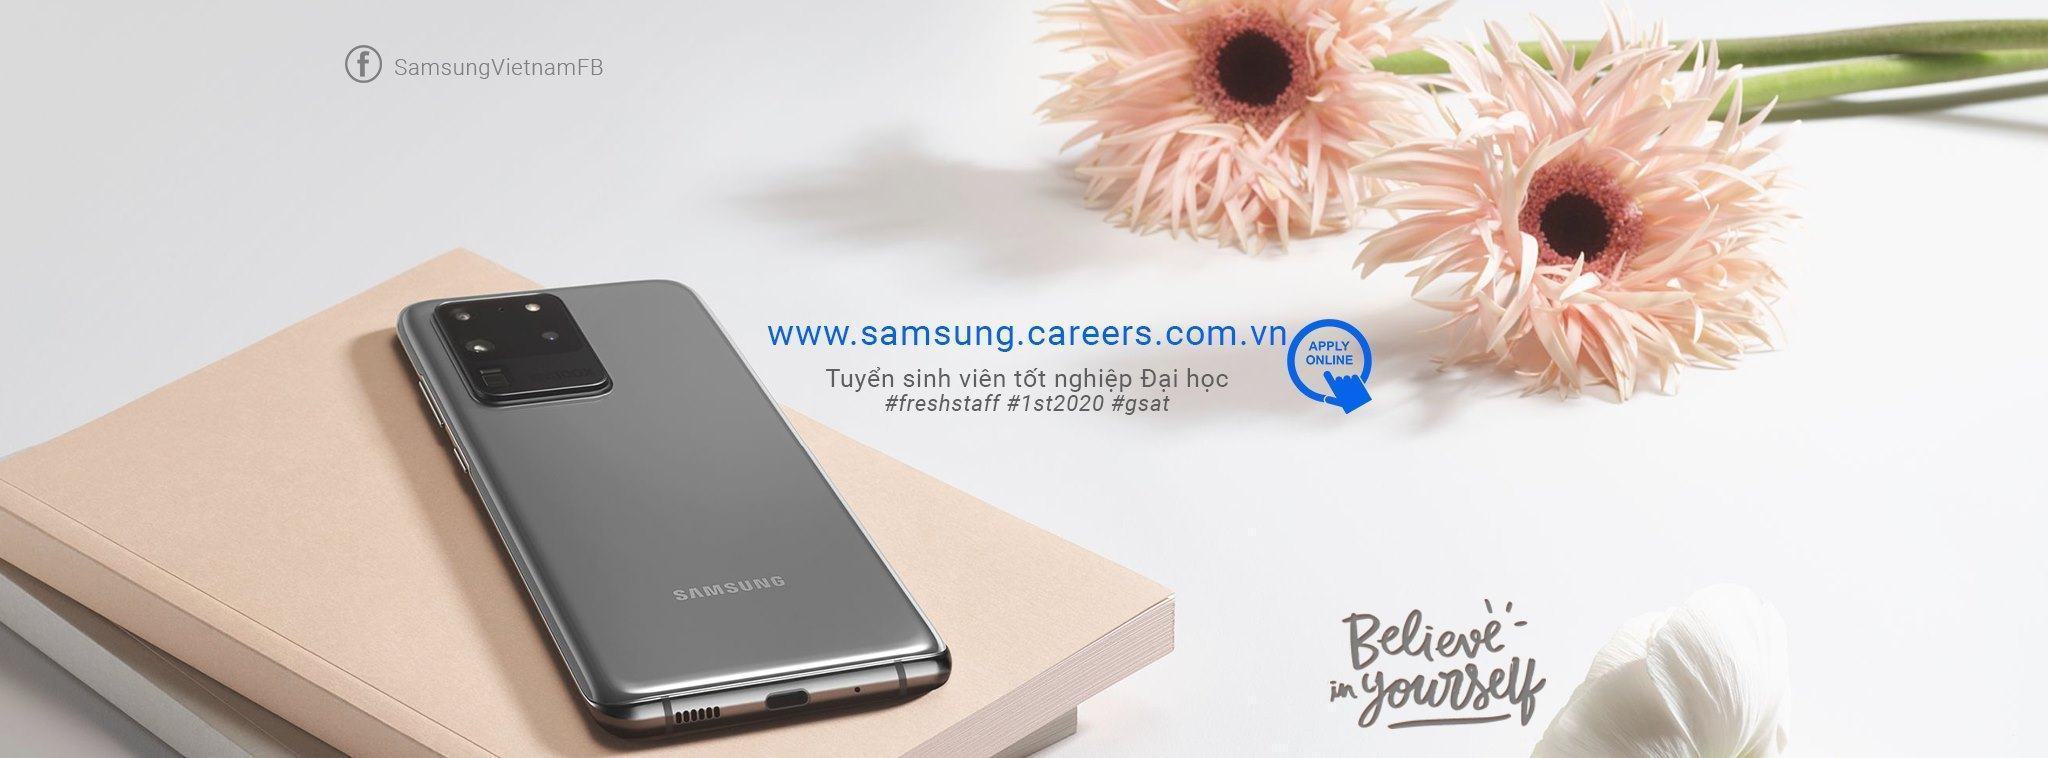 Công ty Samsung tuyển dụng 2020 - Tuyển sinh viên tốt nghiệp đại học( đợt 1 năm 2020)